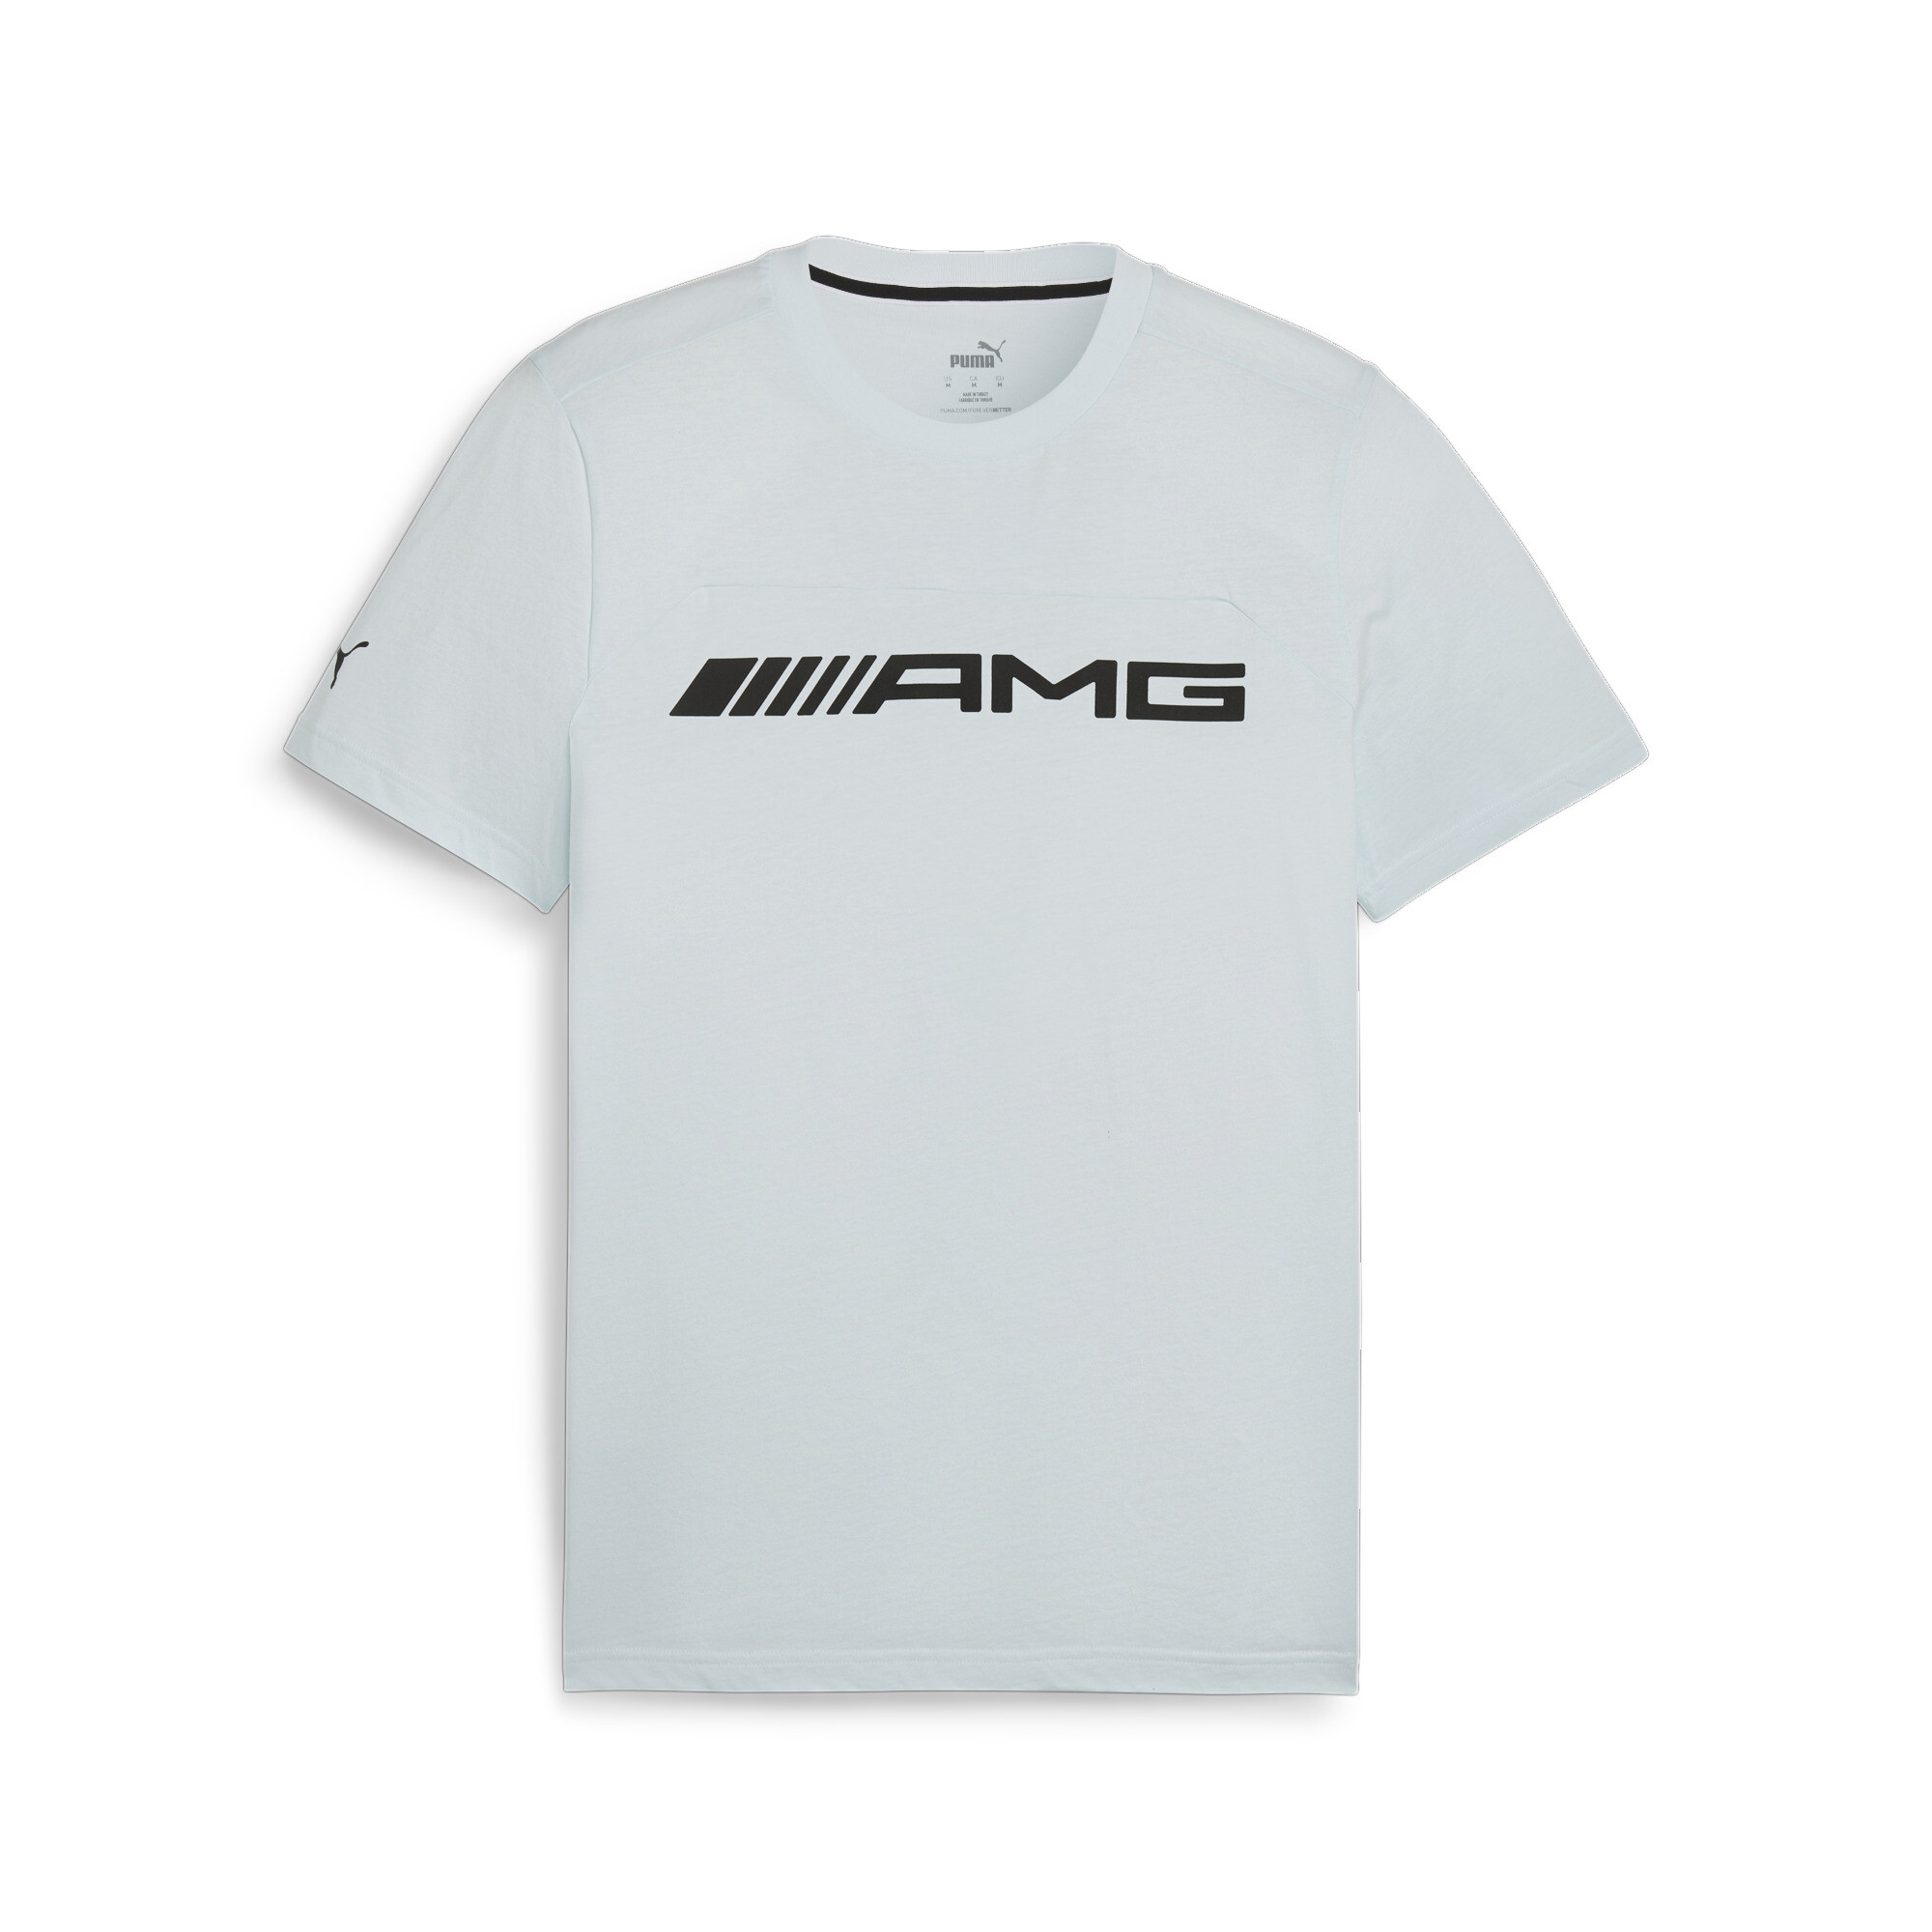 Men's Puma AMG Motorsports T-Shirt, Blue, Size XS, Clothing